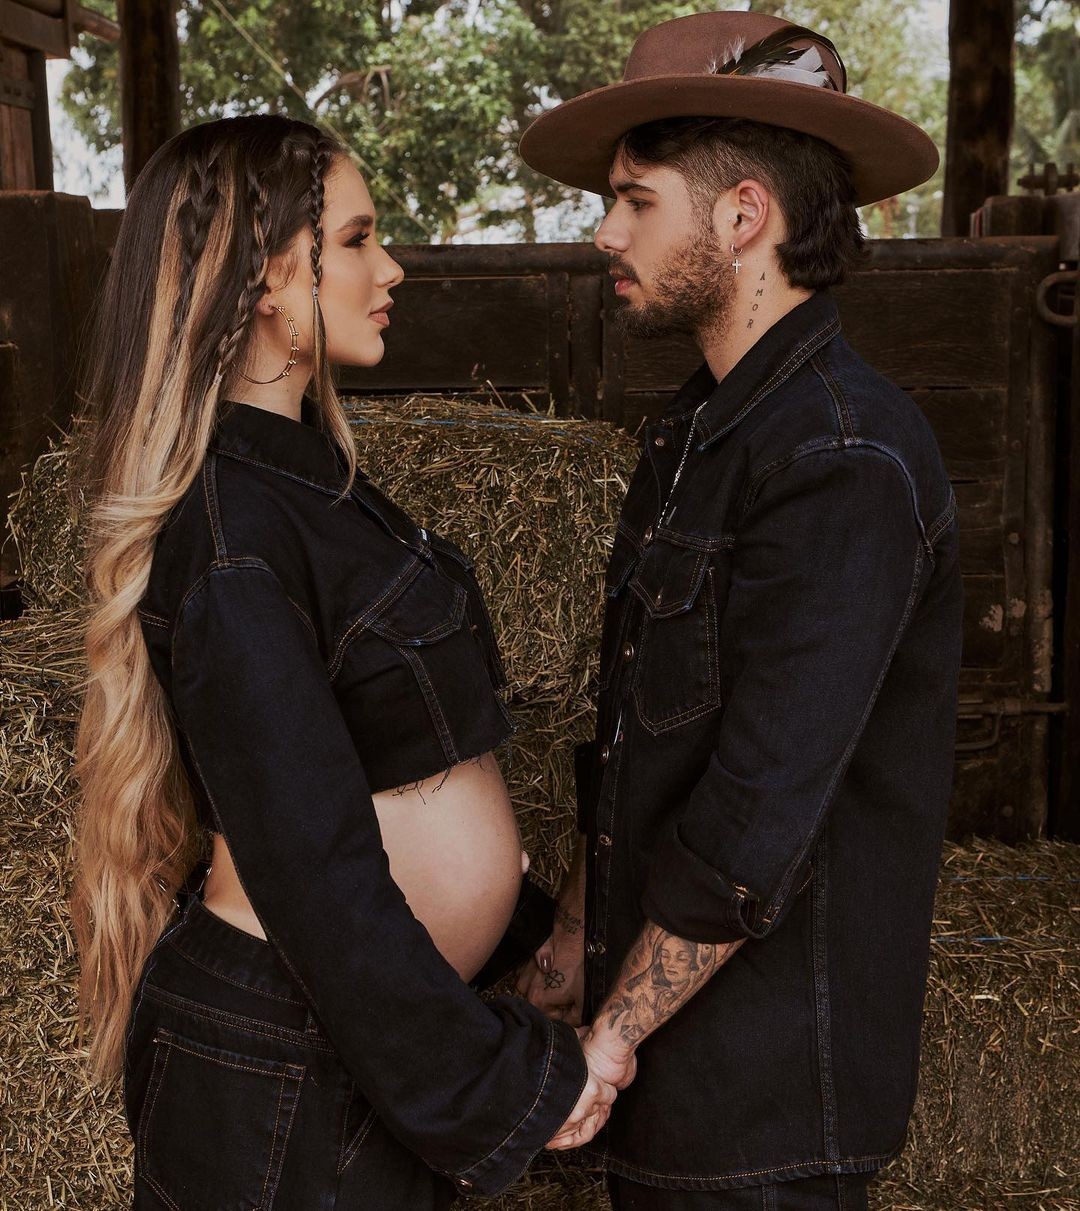 Ensaio fotográfico de Virgínia, grávida de 8 meses, e o cantor Zé Felipe  — Foto: Reprodução/Instagram